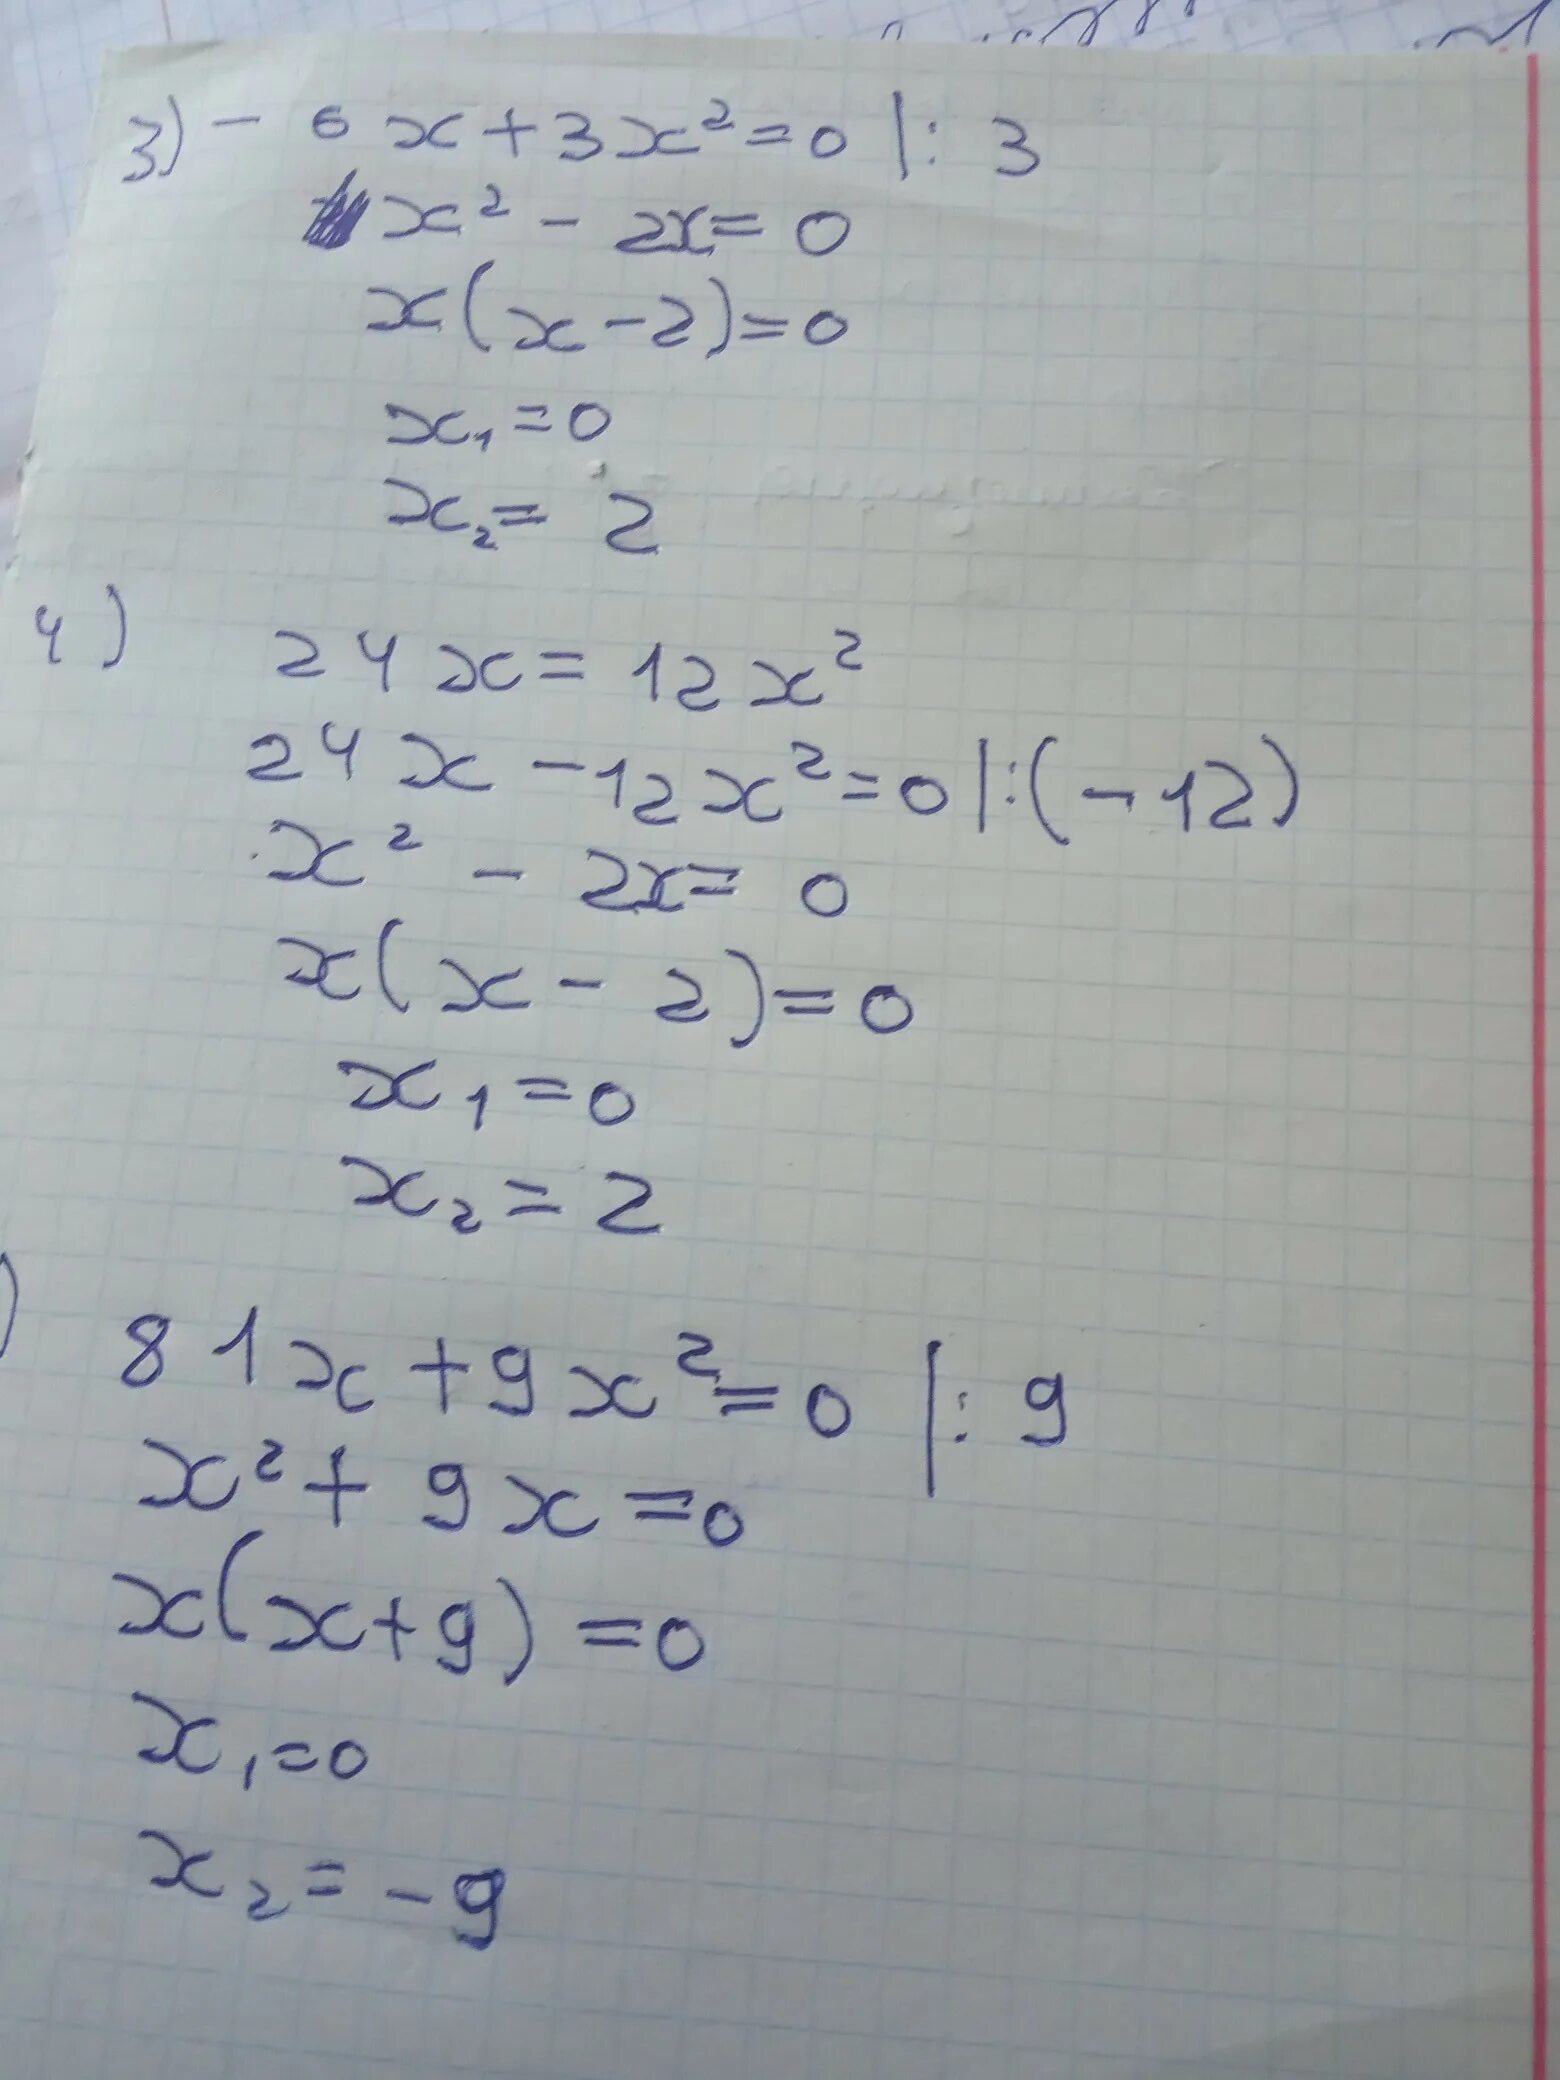 3 9x 28 3x 9. X3-6x2+3x+21=0. X^3-3x^2+3x+2. -X2-6x-9<=0 решение. X 2 2x 3 0 ответ.